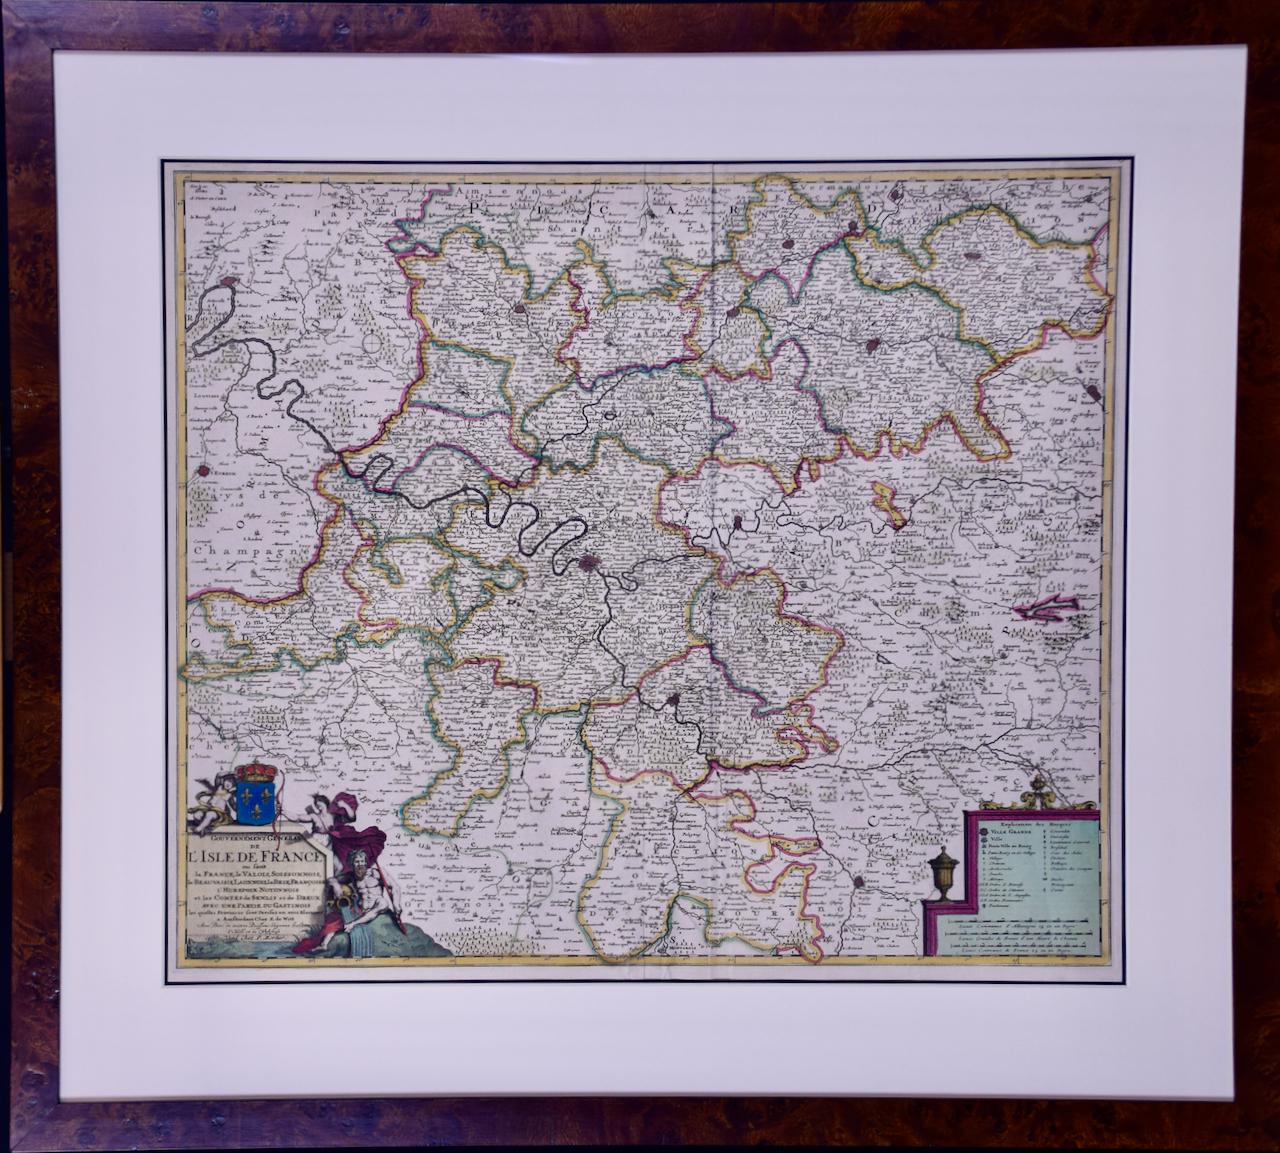 Frederick de Wit Print - L'Isle de France: A Hand-colored 17th Century Map by De Wit 